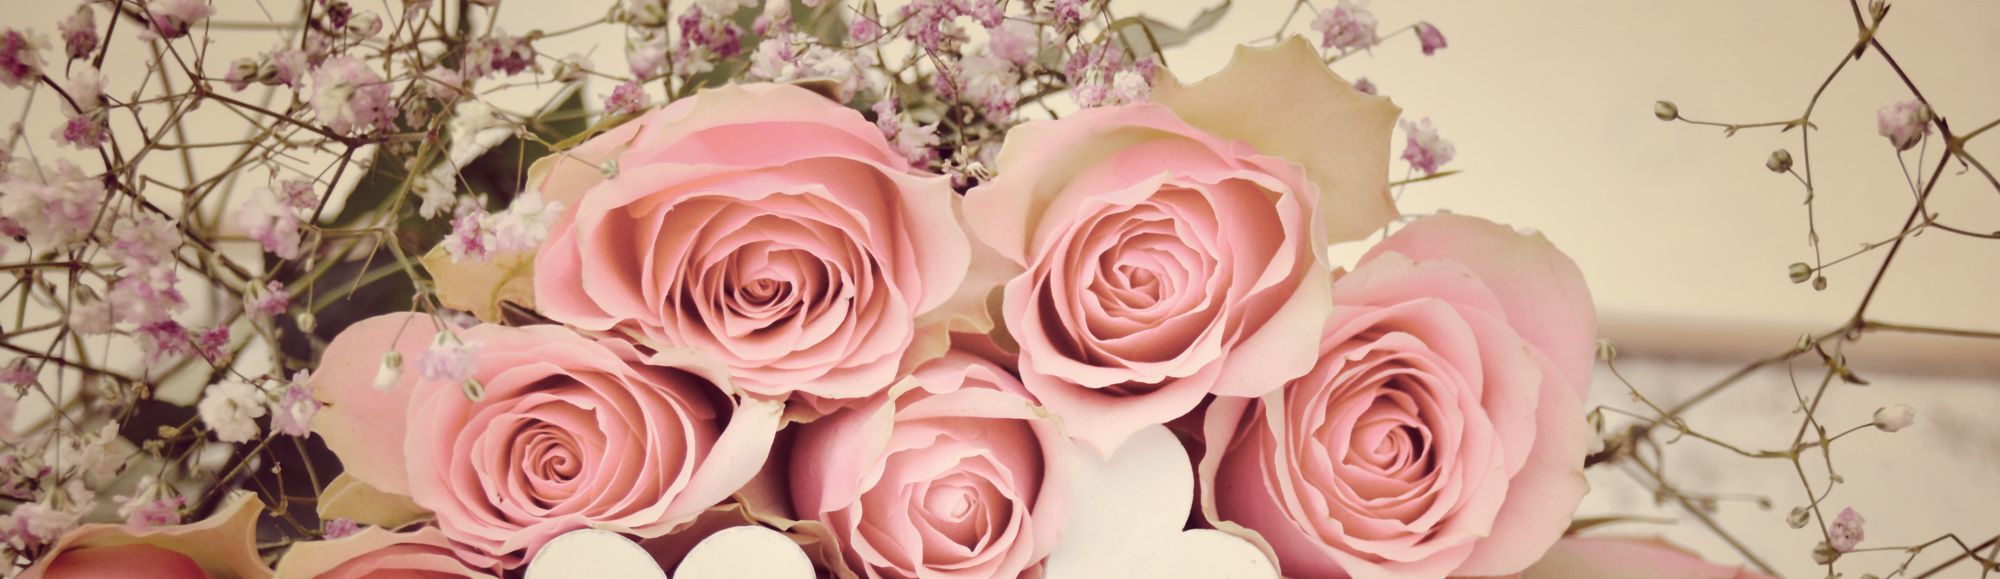 Trauerfloristik: Blumenbouquet aus Rosen für eine Trauerfeier